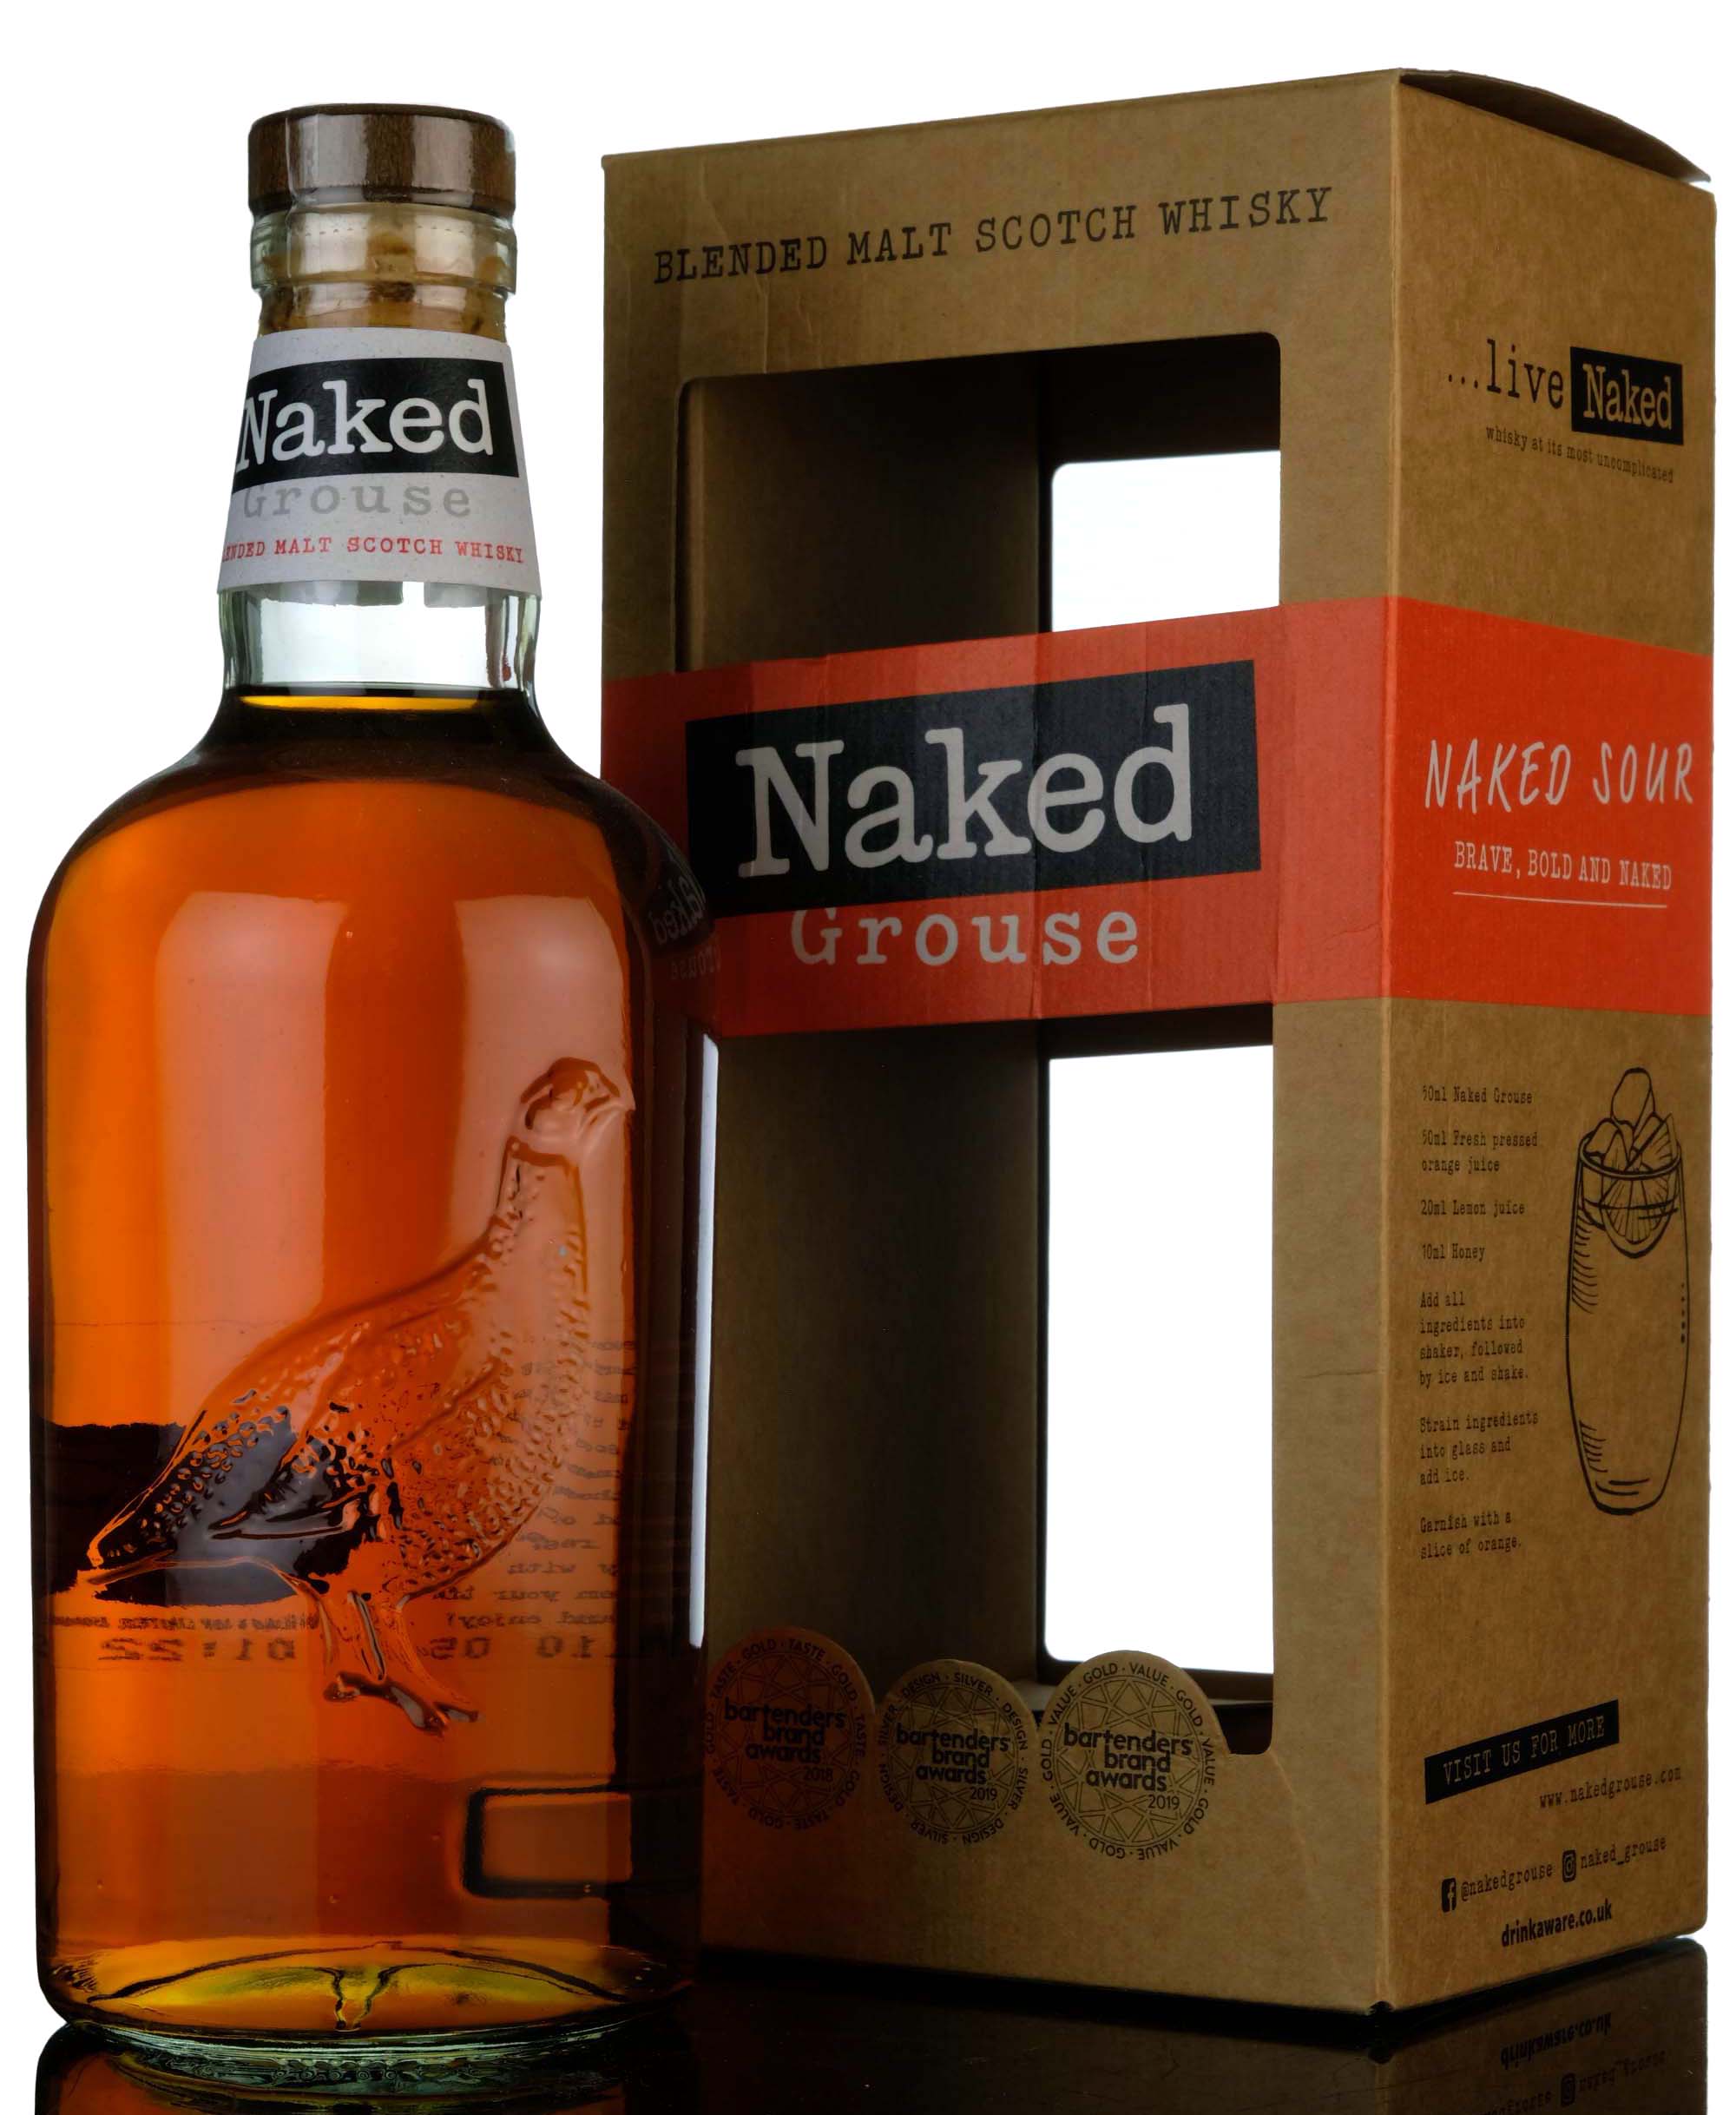 Naked Grouse Blended Malt